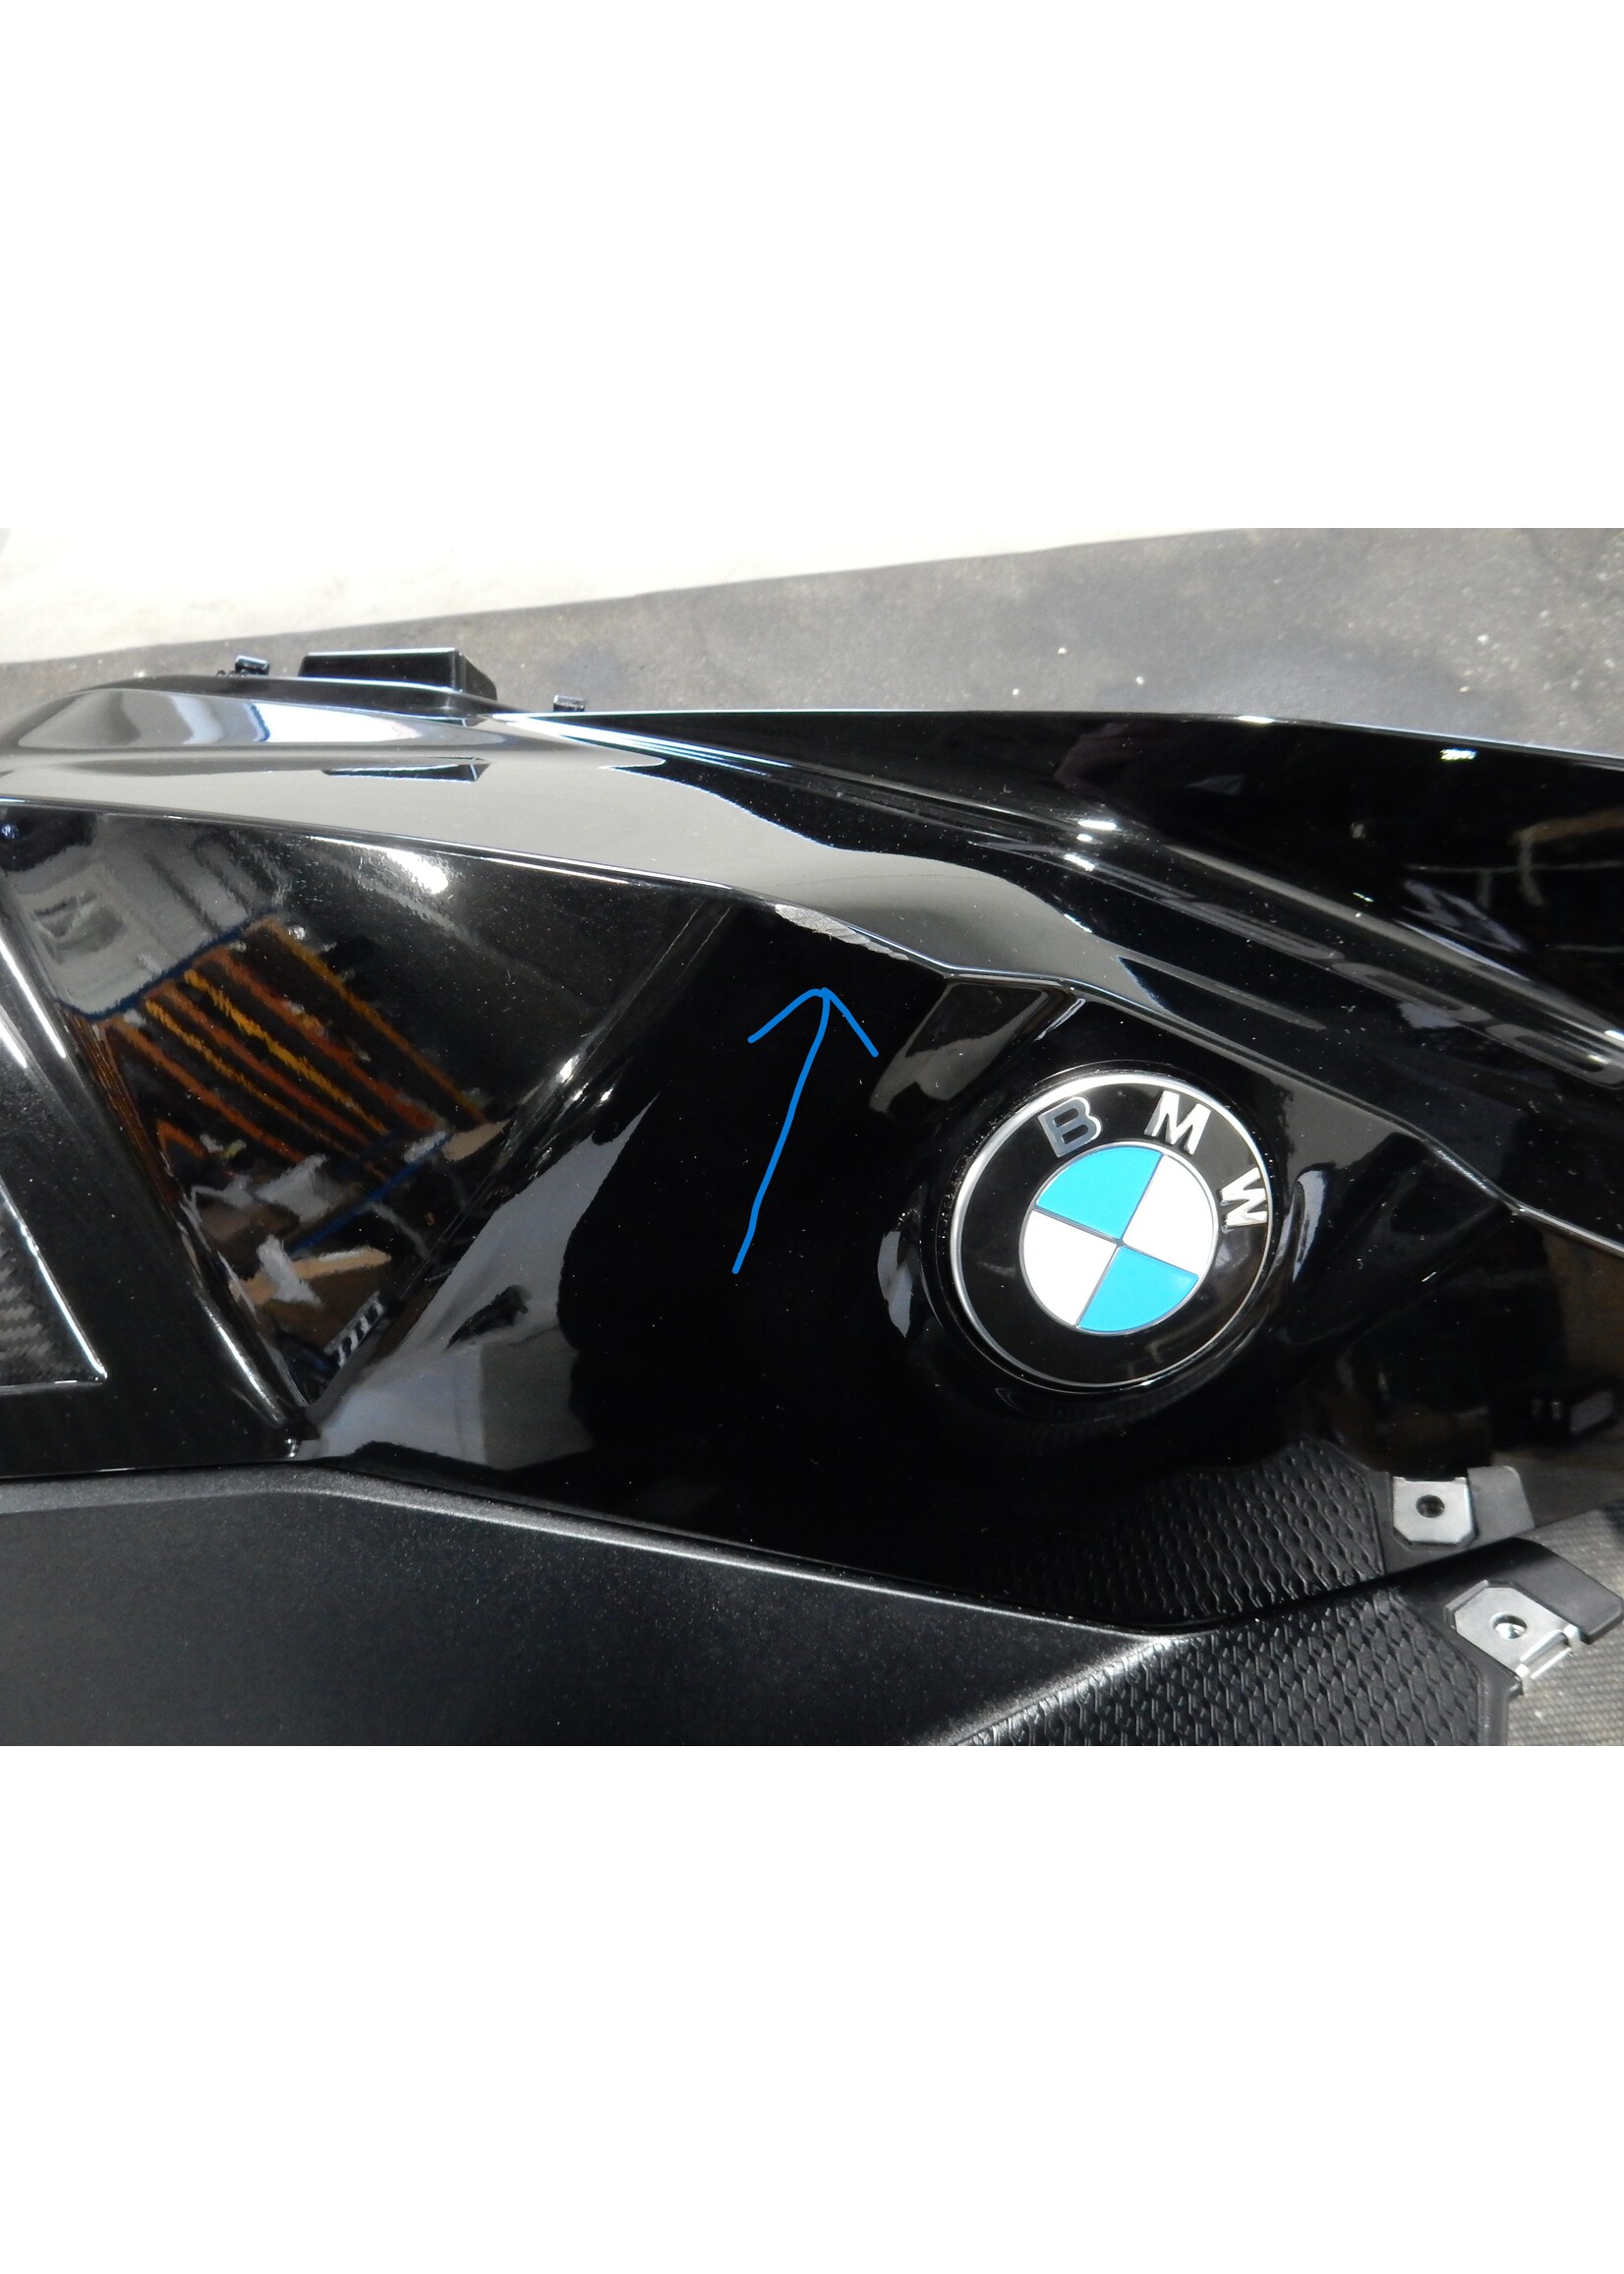 BMW BMW F 900 XR Tankafdekking rechts onder / Zijdeel bekleding rechts Tape op transparante lak BLACK STORM / 46638403902 / 46638403894 / 46638358168